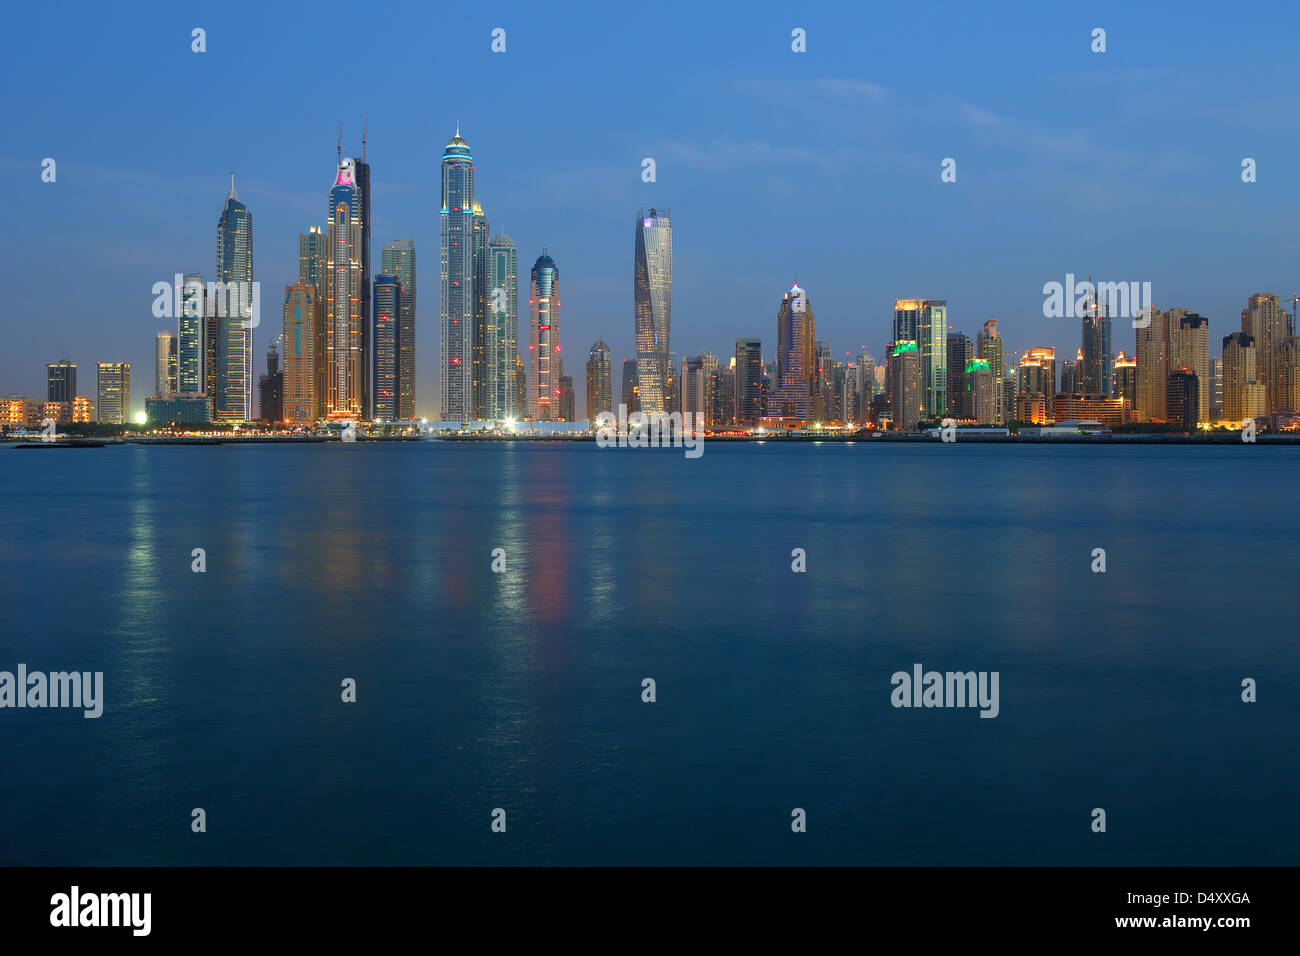 Dubai Marina skyline at dusk, United Arab Emirates Stock Photo